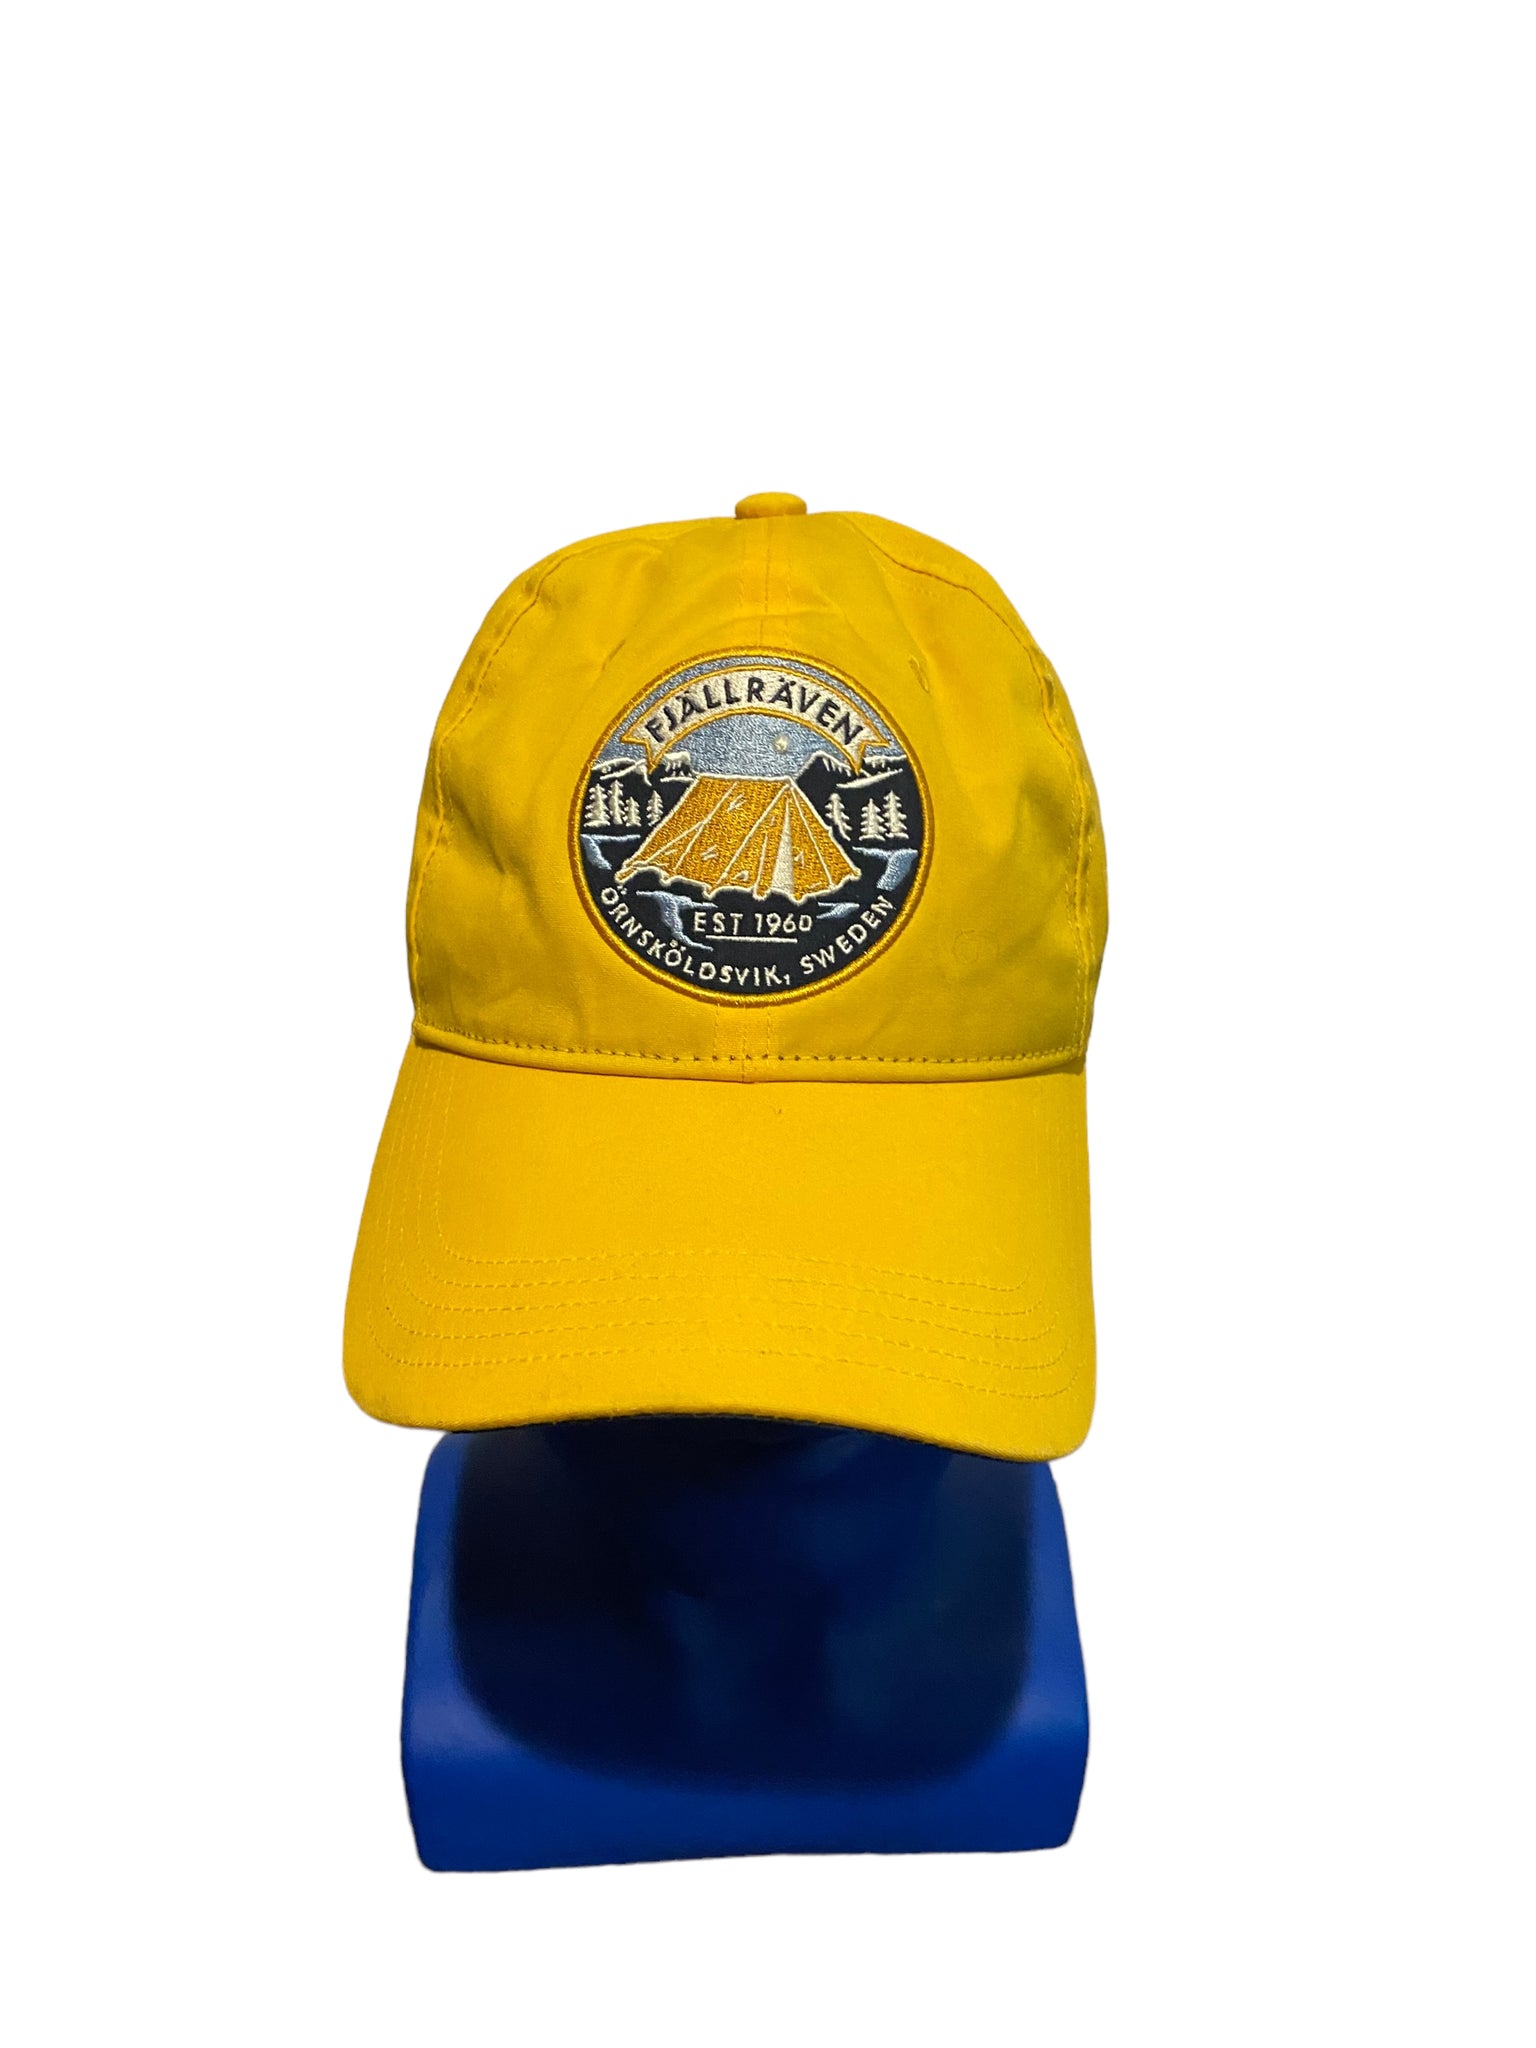 Fjallraven Est 1960 Ornakoldavik, Sweden Patch Yellow Adjustable Strap Hat